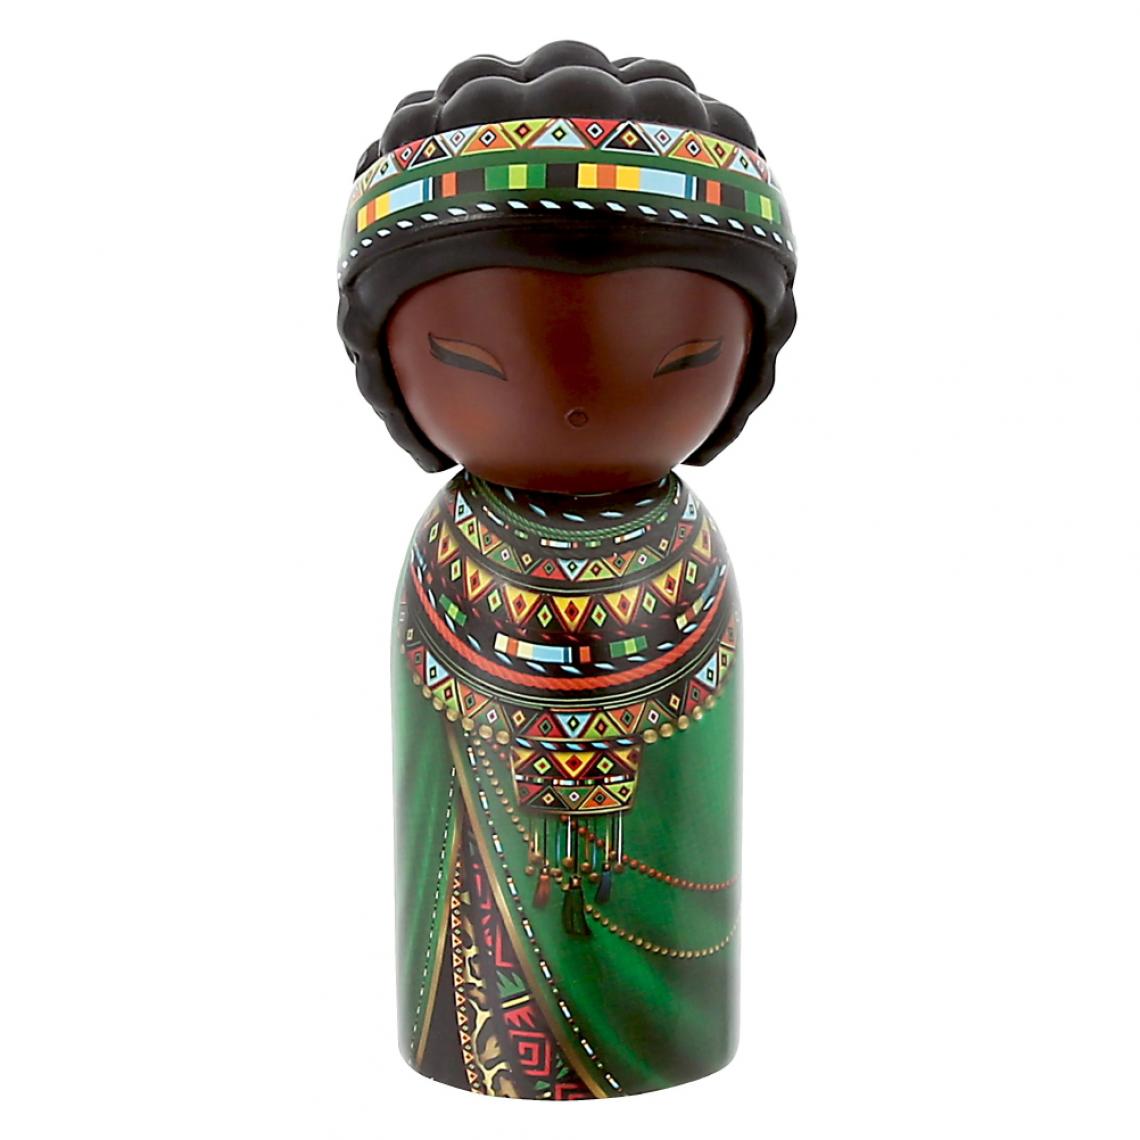 Kontiki - Figurine Kenya de collection One Family - Petite déco d'exterieur